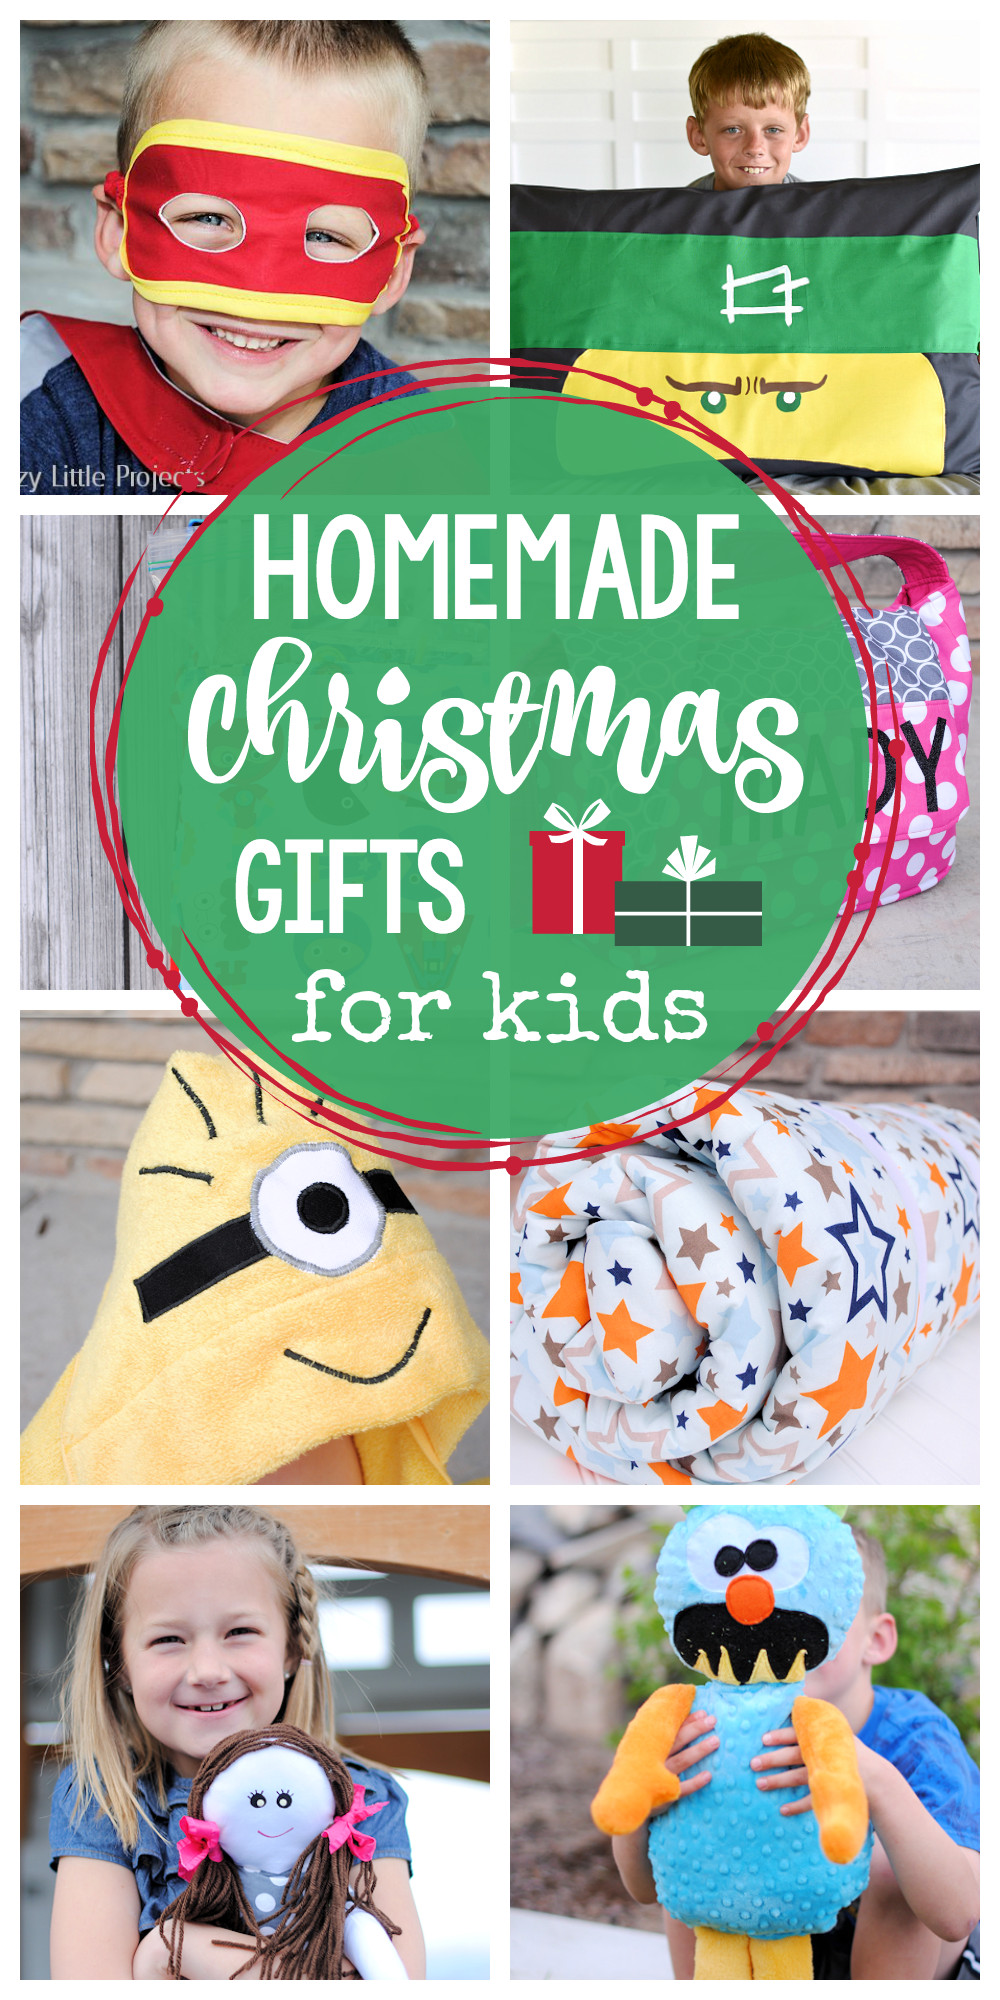 Homemade Christmas Gifts For Children
 25 Homemade Christmas Gifts for Kids Crazy Little Projects